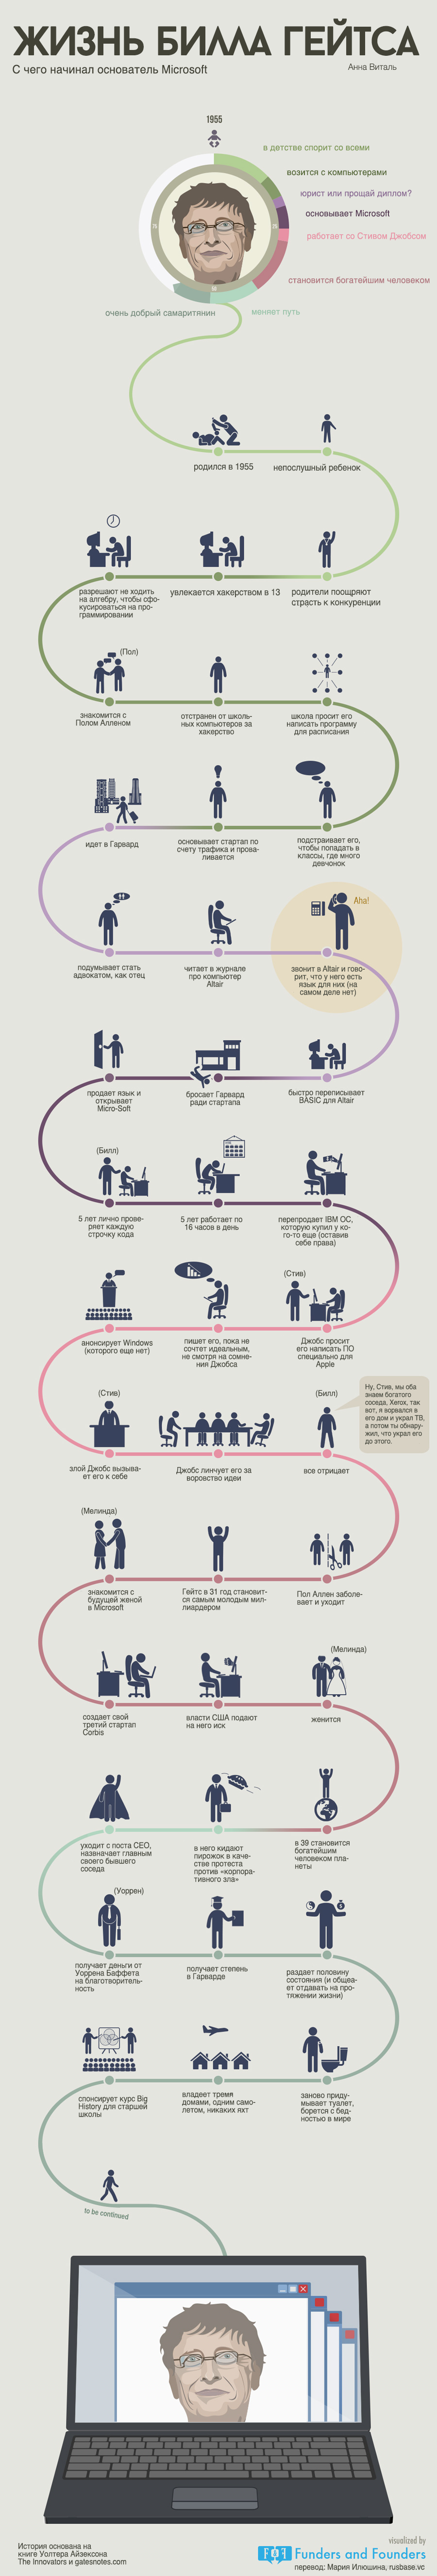 Жизнь Билла Гейтса - инфографика